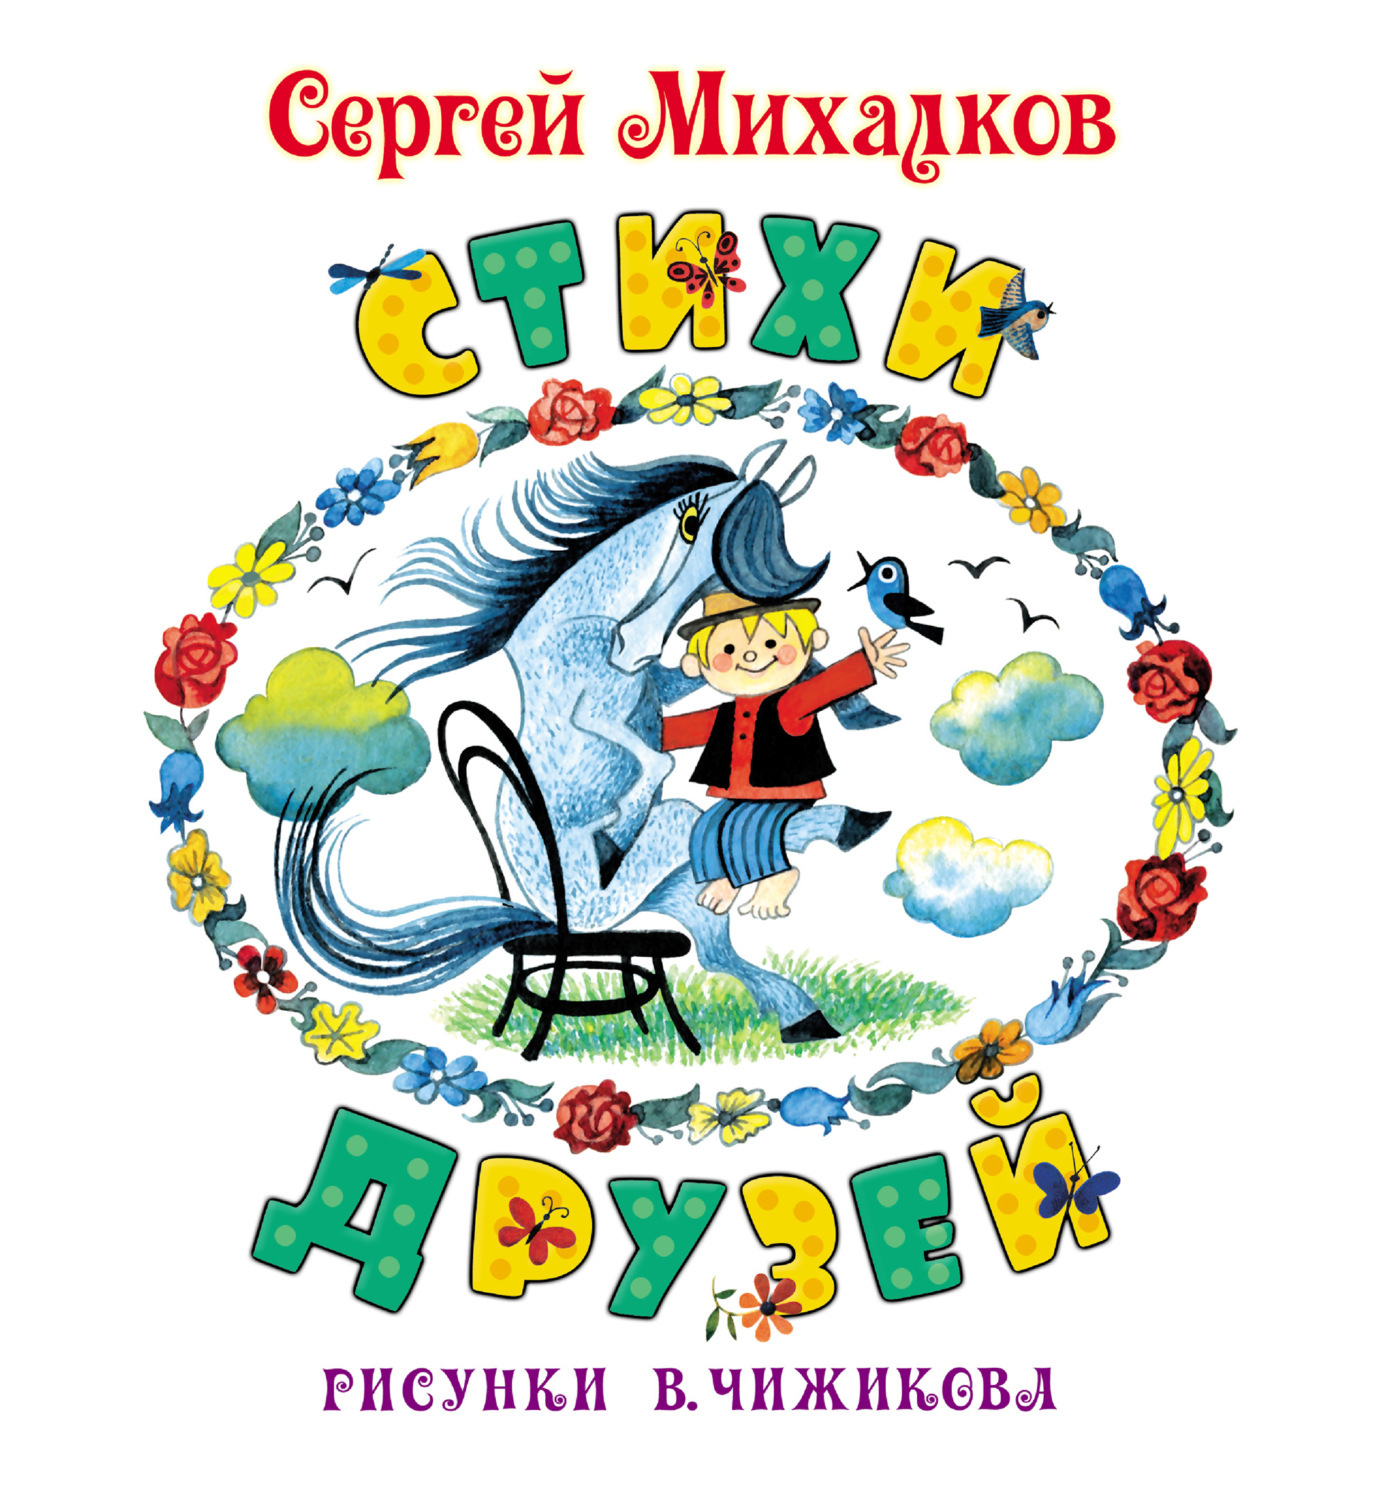 Книги Михалкова для детей